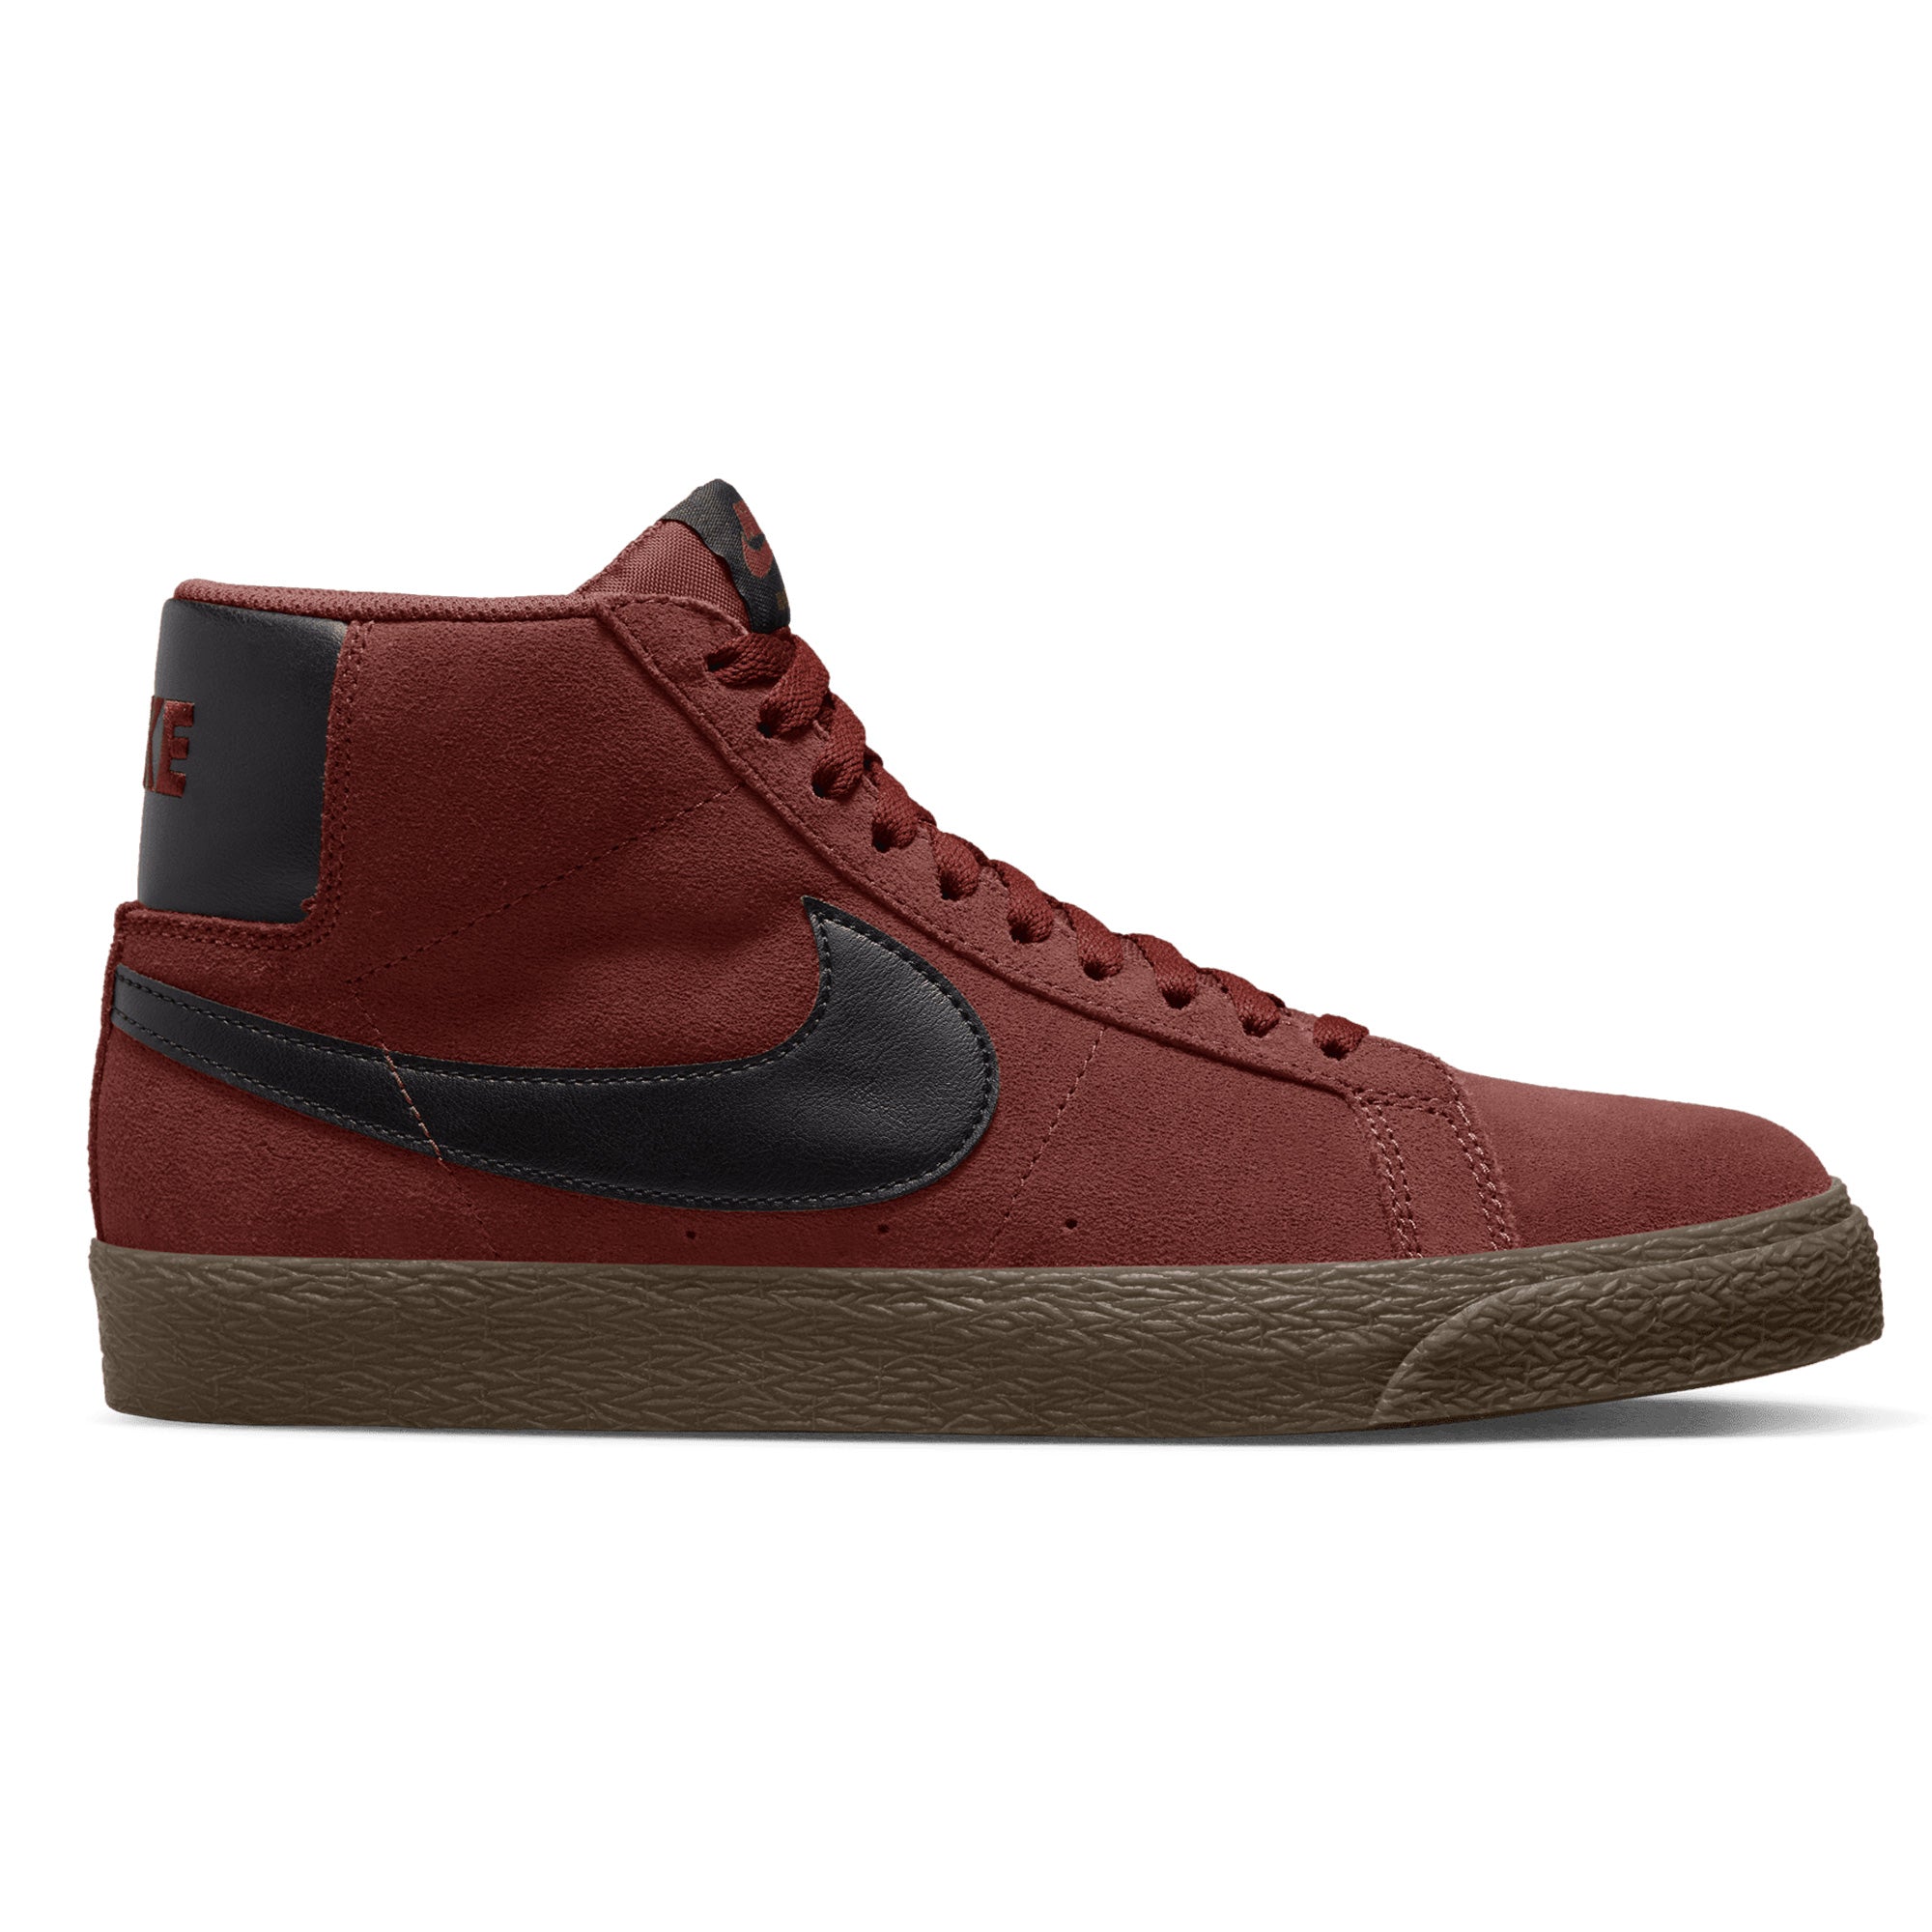 Nike SB Blazer Mid Shoes - Oxen Brown/Black-Oxen Brown